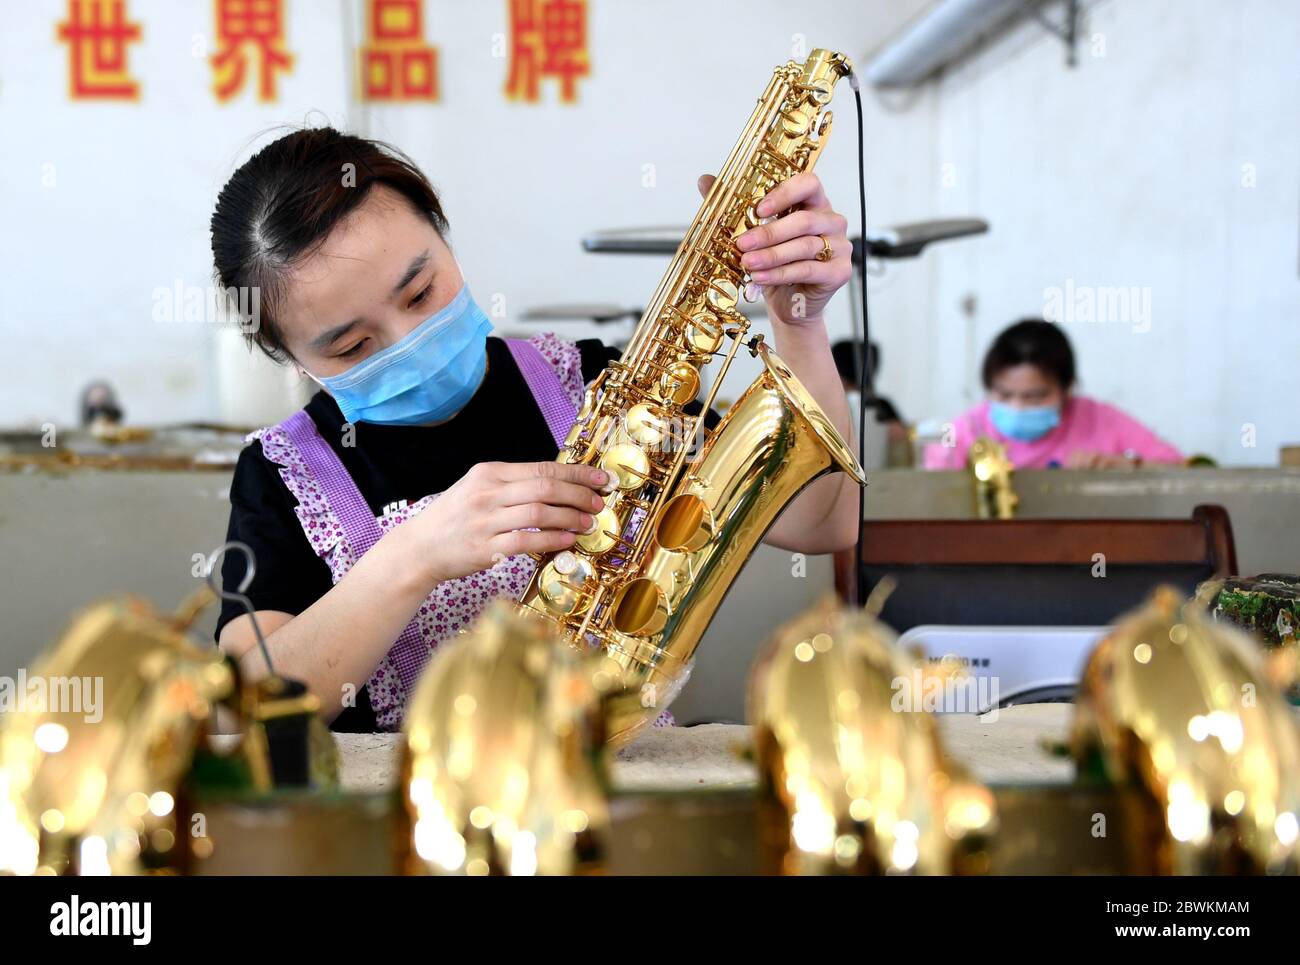 Hengshui, Chinas Provinz Hebei. Juni 2020. Ein Arbeiter montiert Saxophone in einer Musikinstrumentenfabrik im Wuqiang Bezirk von Hengshui, Nordchinesische Provinz Hebei, 2. Juni 2020. Die Behörden im Wuqiang County haben eine Initiative zur Armutsbekämpfung durchgeführt, die die lokale Musikinstrumentenindustrie dazu ermutigt, ländliche Bewohner, die unterhalb der aktuellen Armutsgrenze leben, einzustellen und ihnen dabei zu helfen, neue Karrieren zu beginnen. Kredit: Zhu Xudong/Xinhua/Alamy Live News Stockfoto